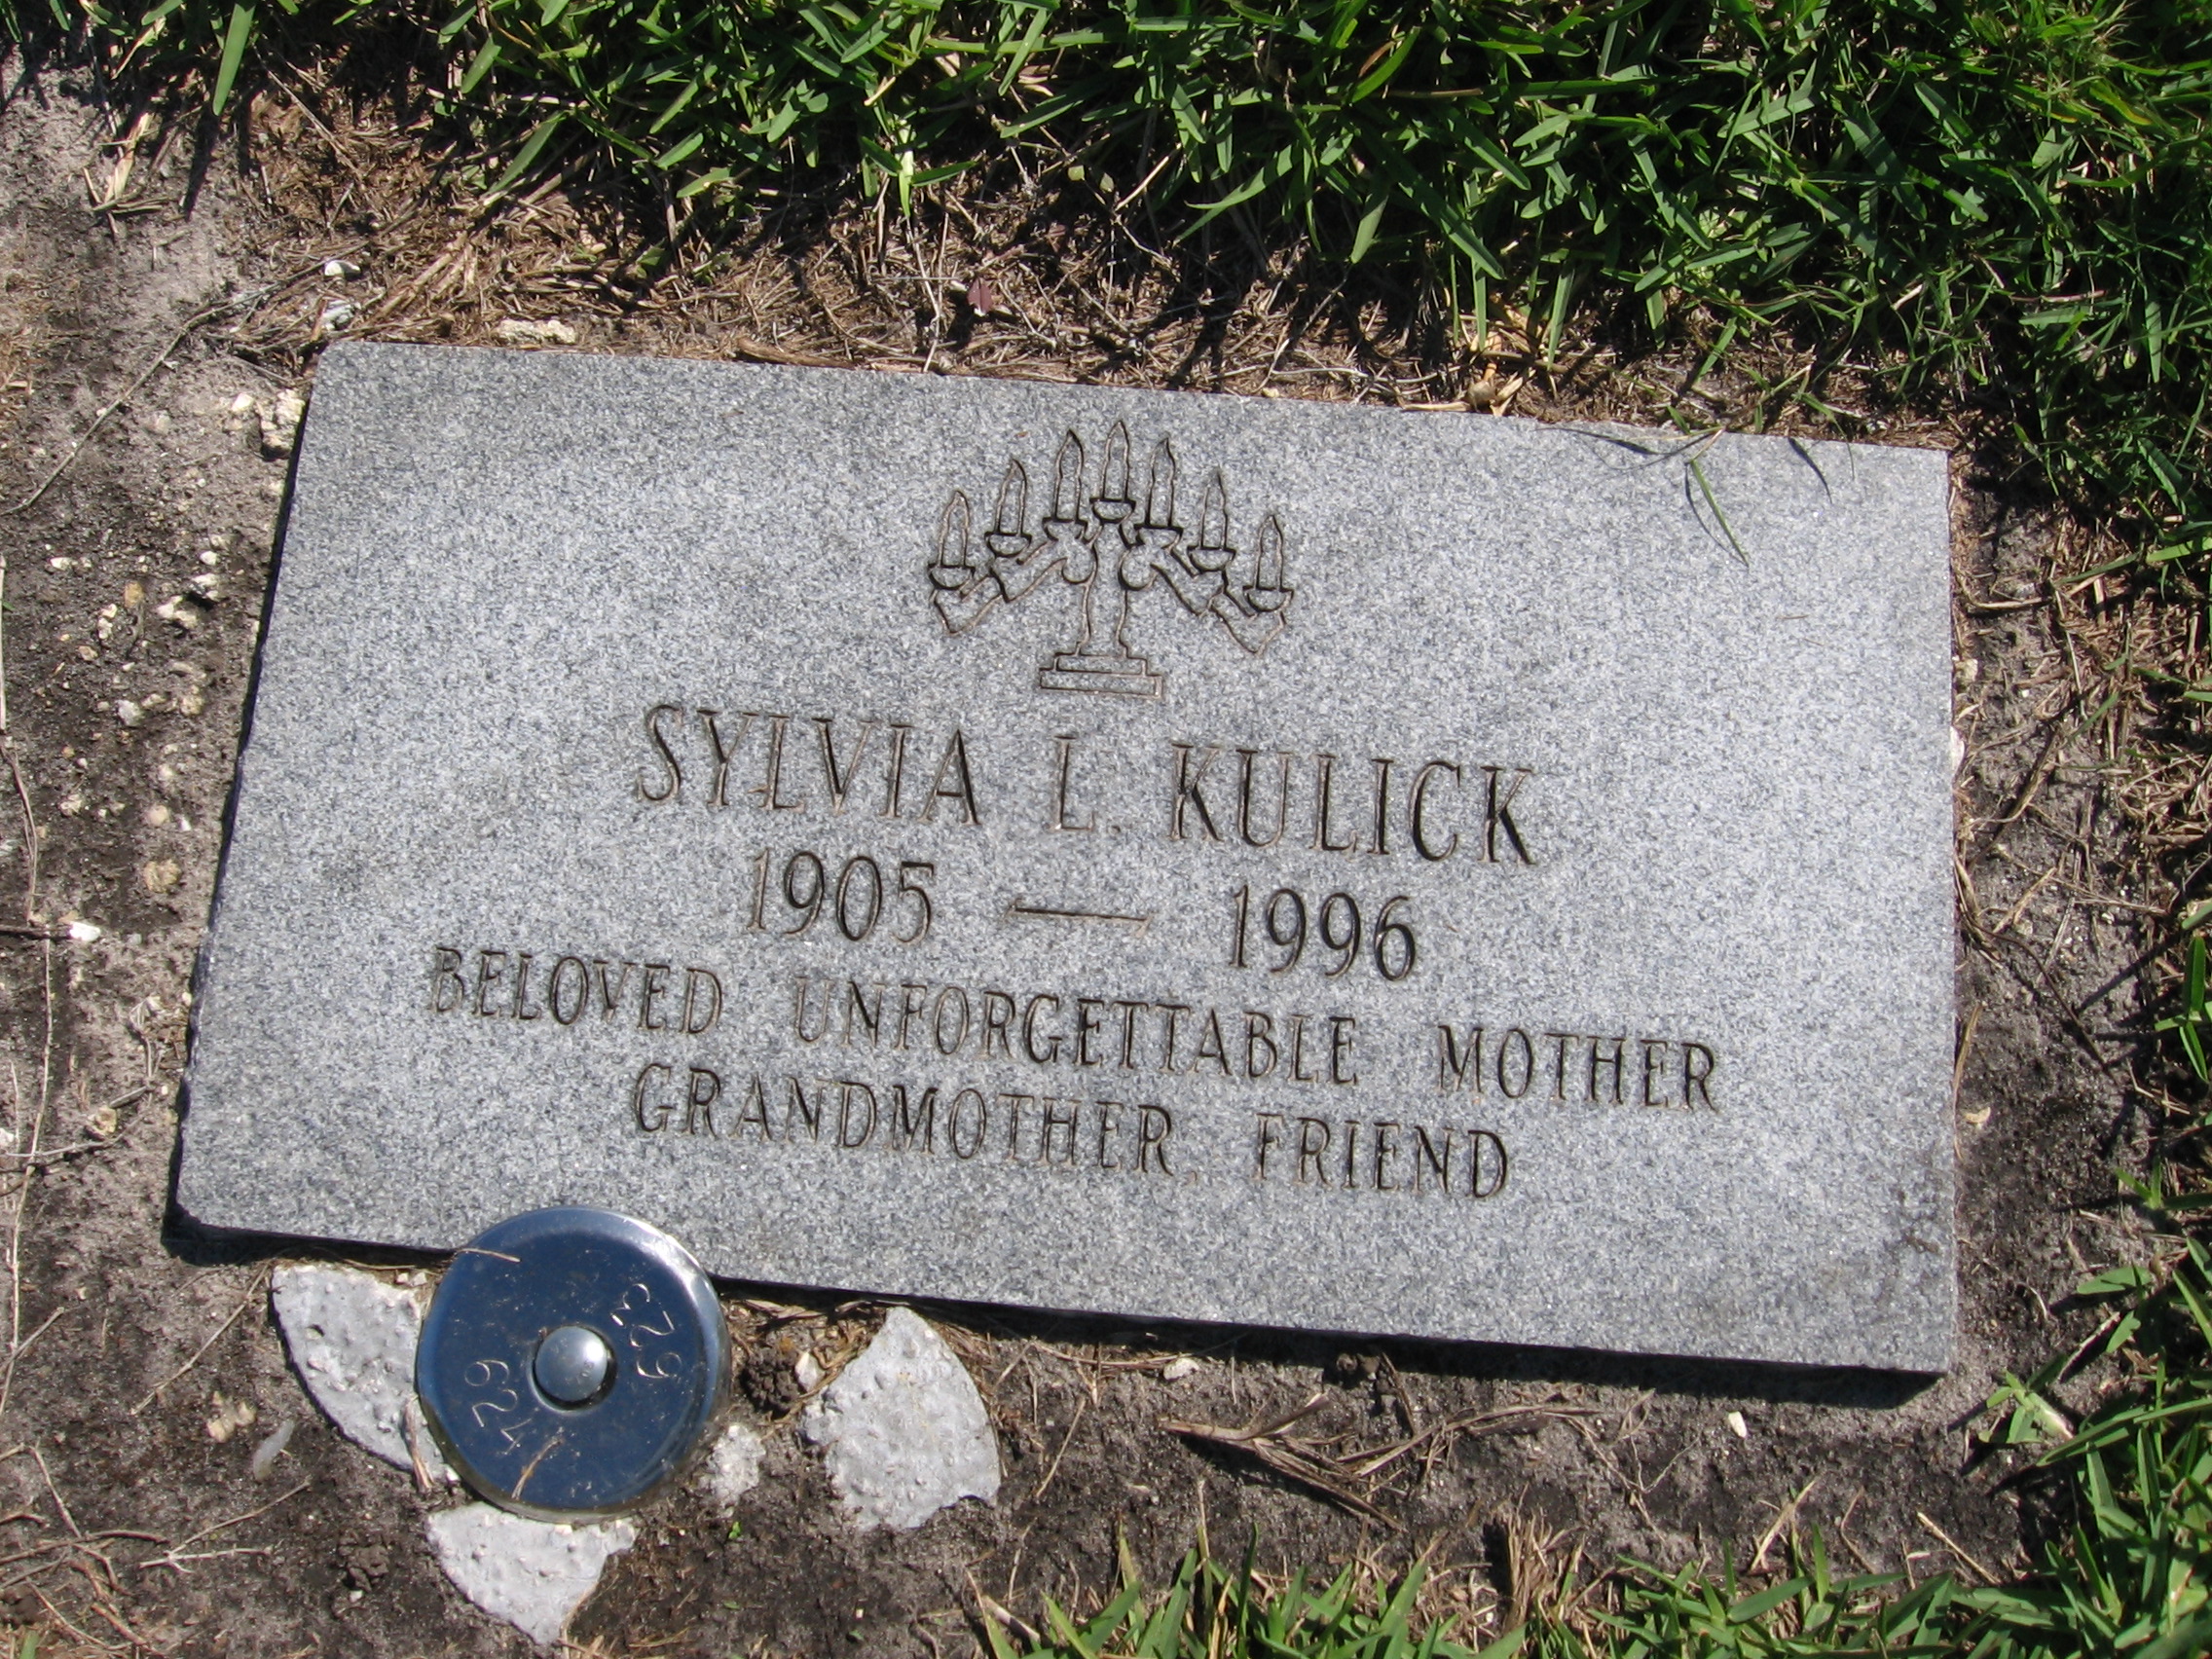 Sylvia L Kulick